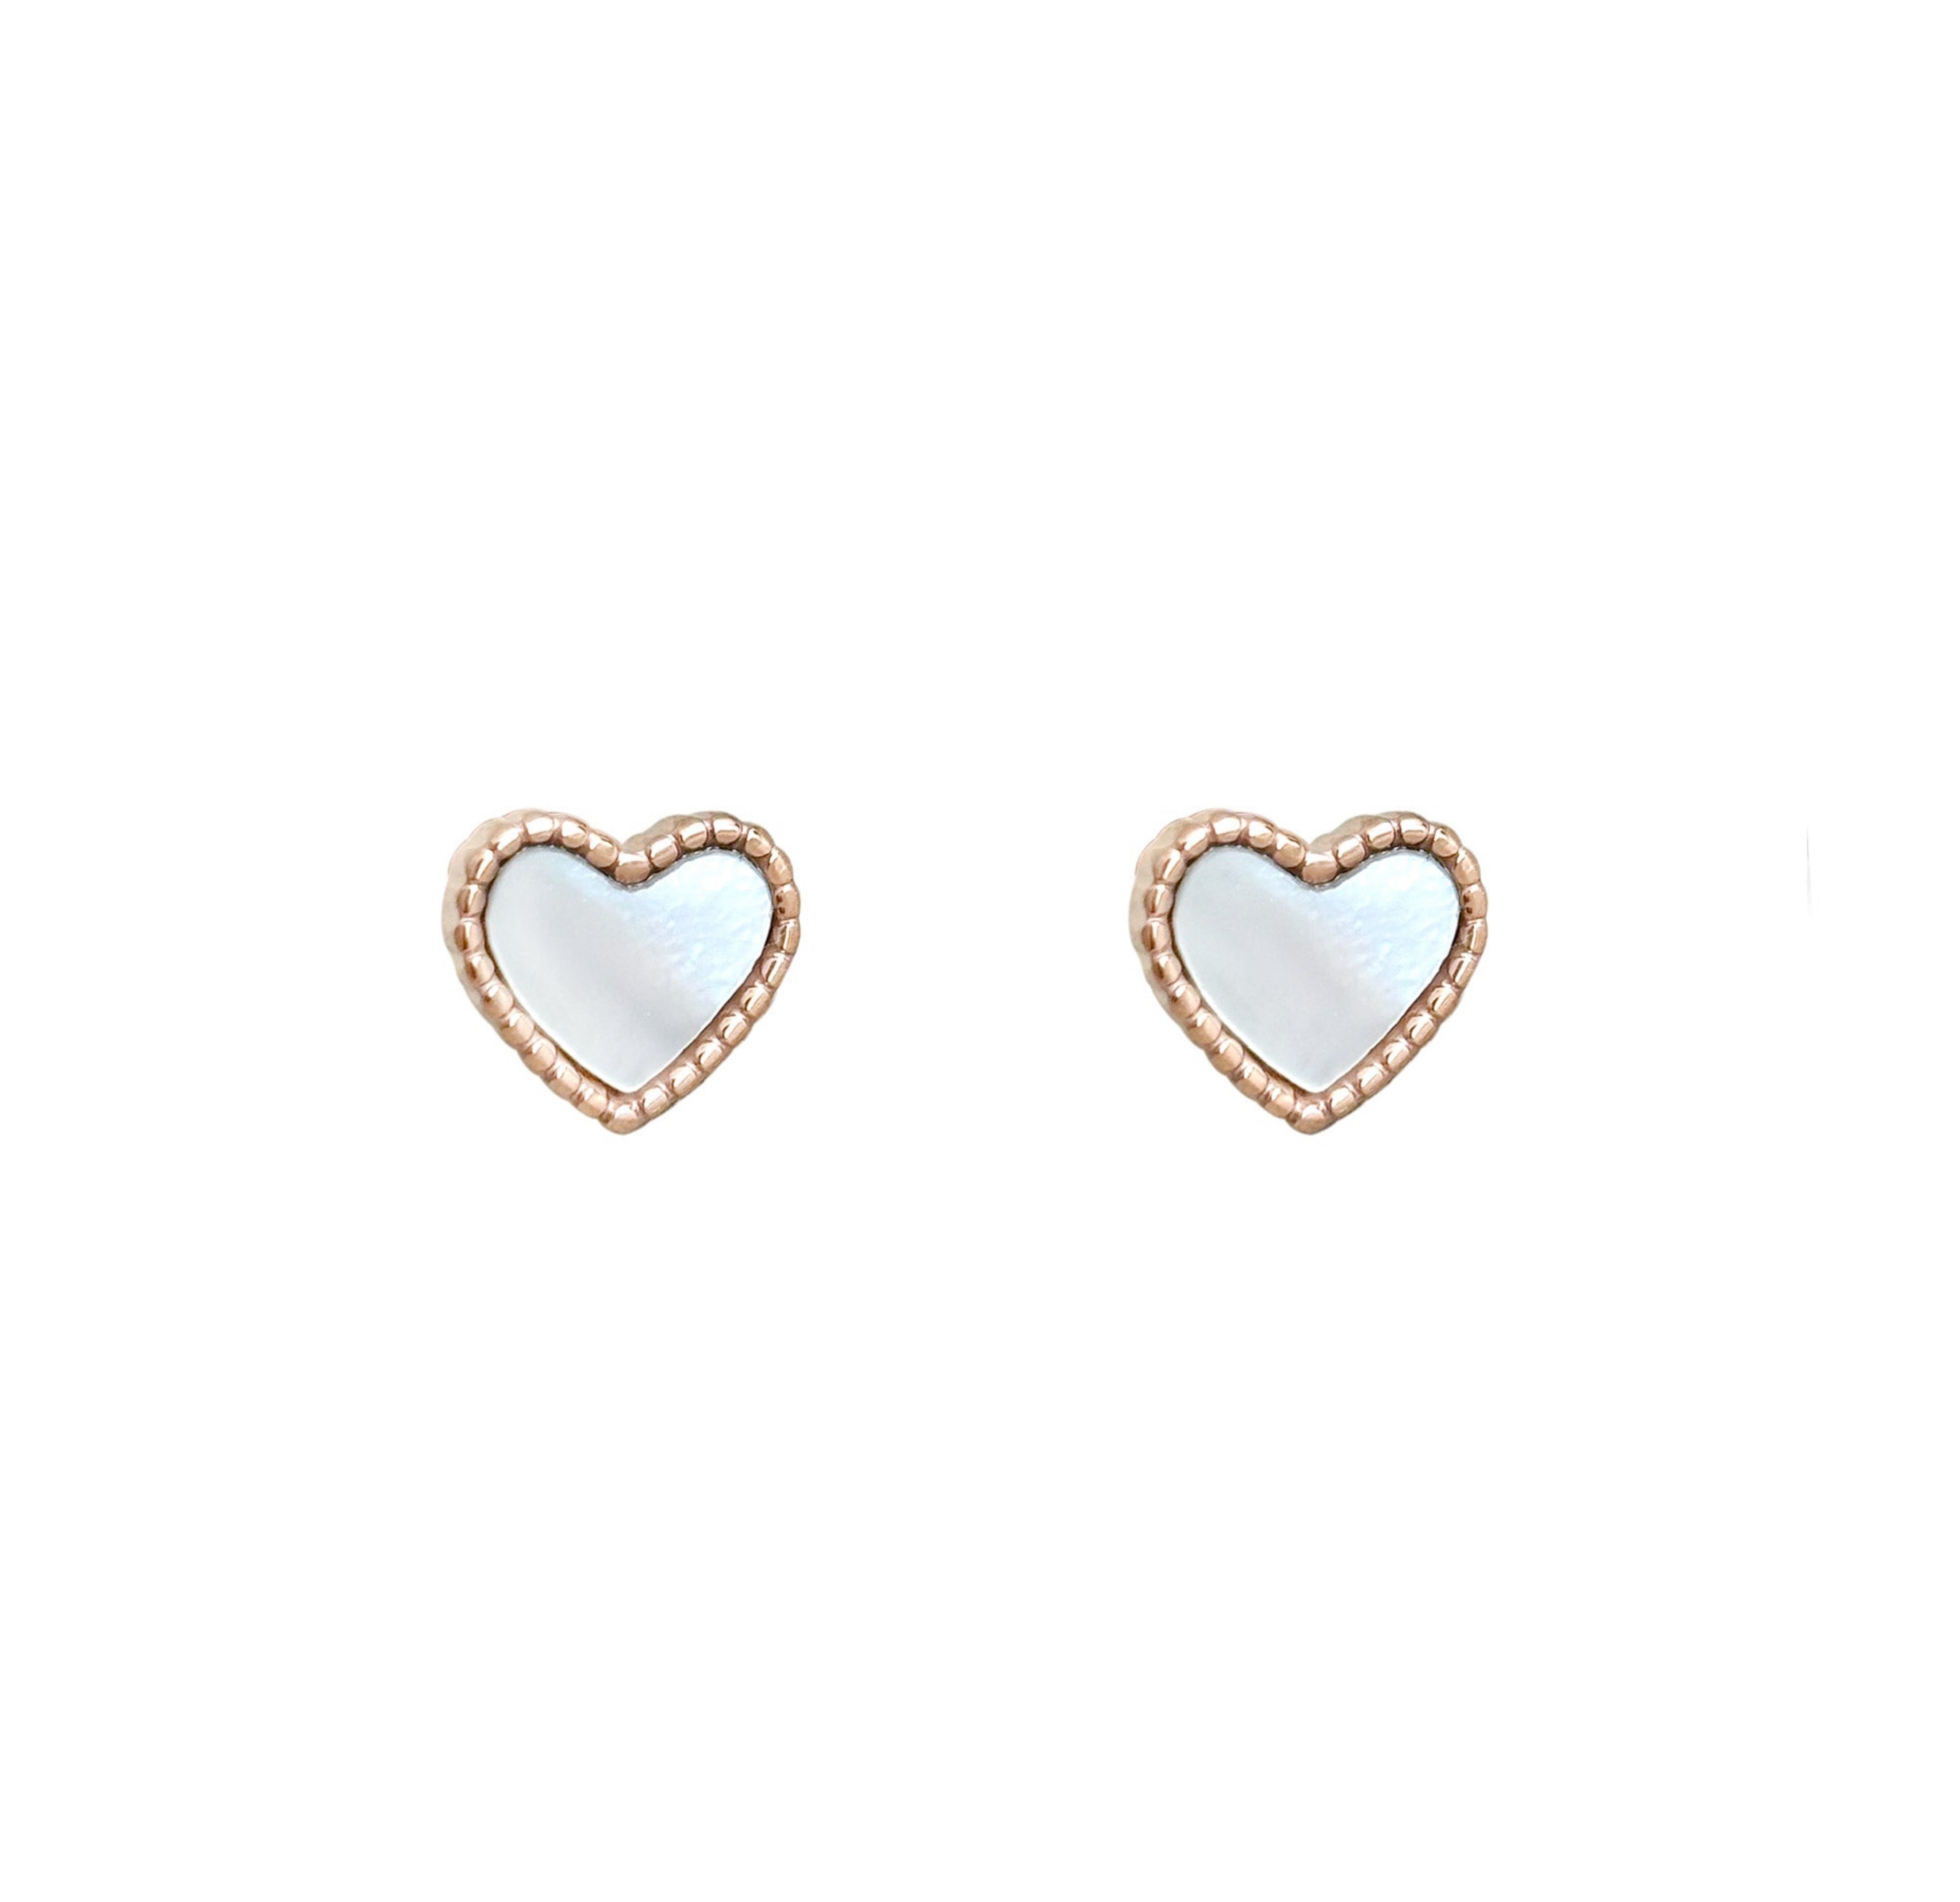 rose gold heart shell stud earrings waterproof jewelry